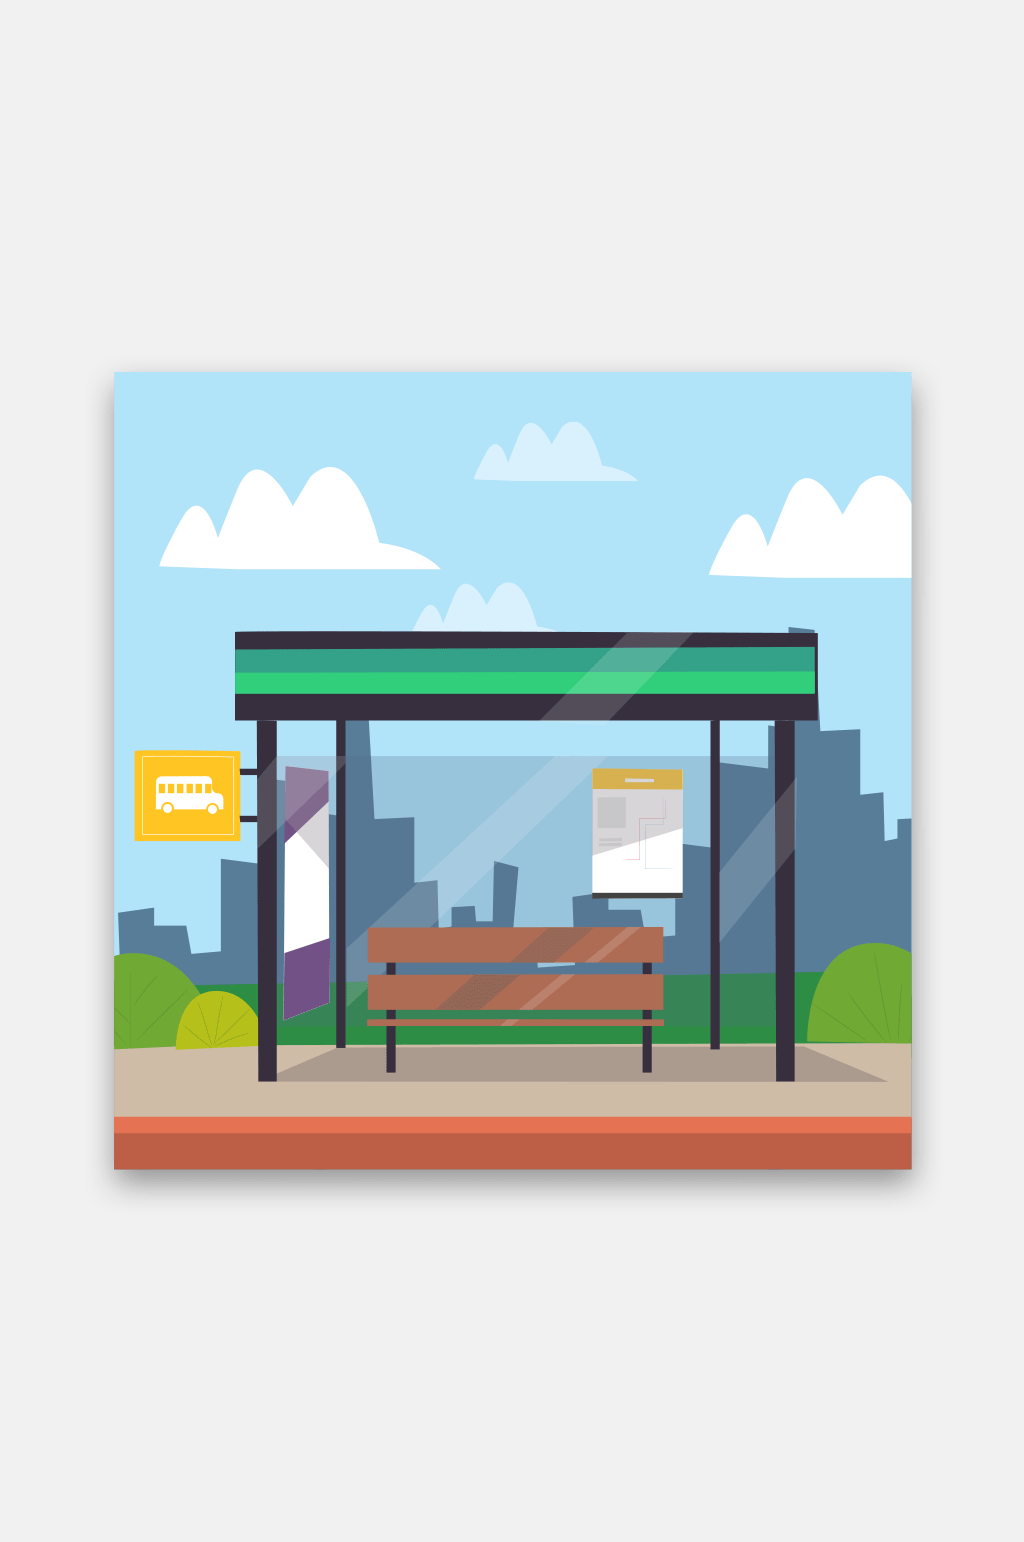 公交车站设计图片手绘图片